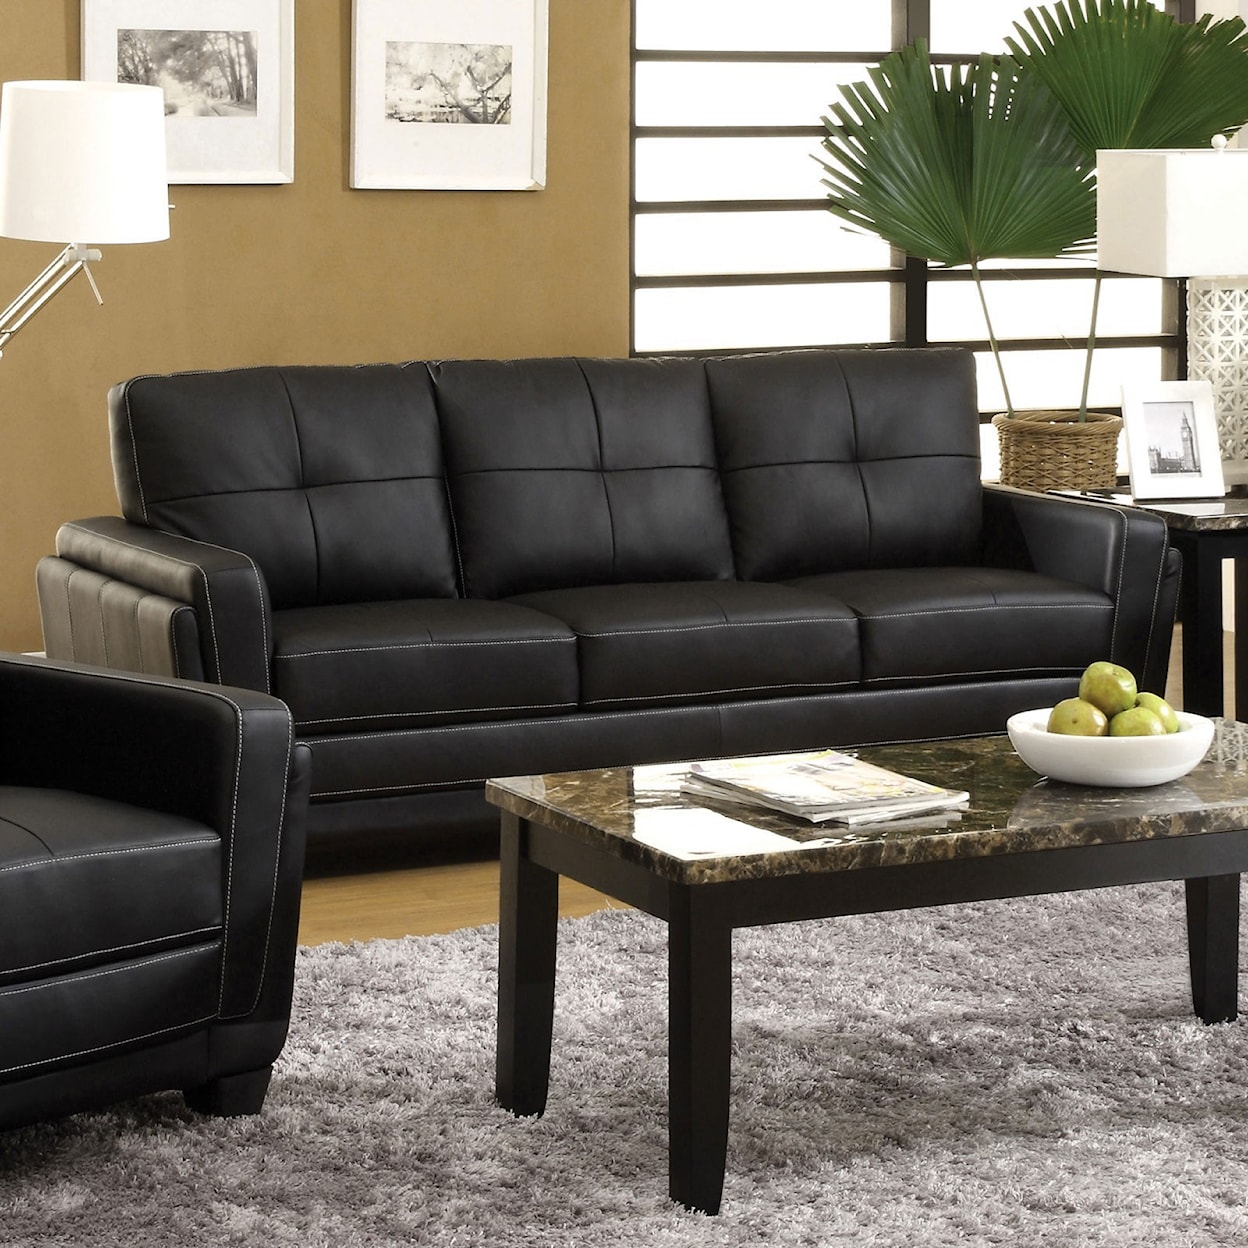 Furniture of America Blacksburg Sofa